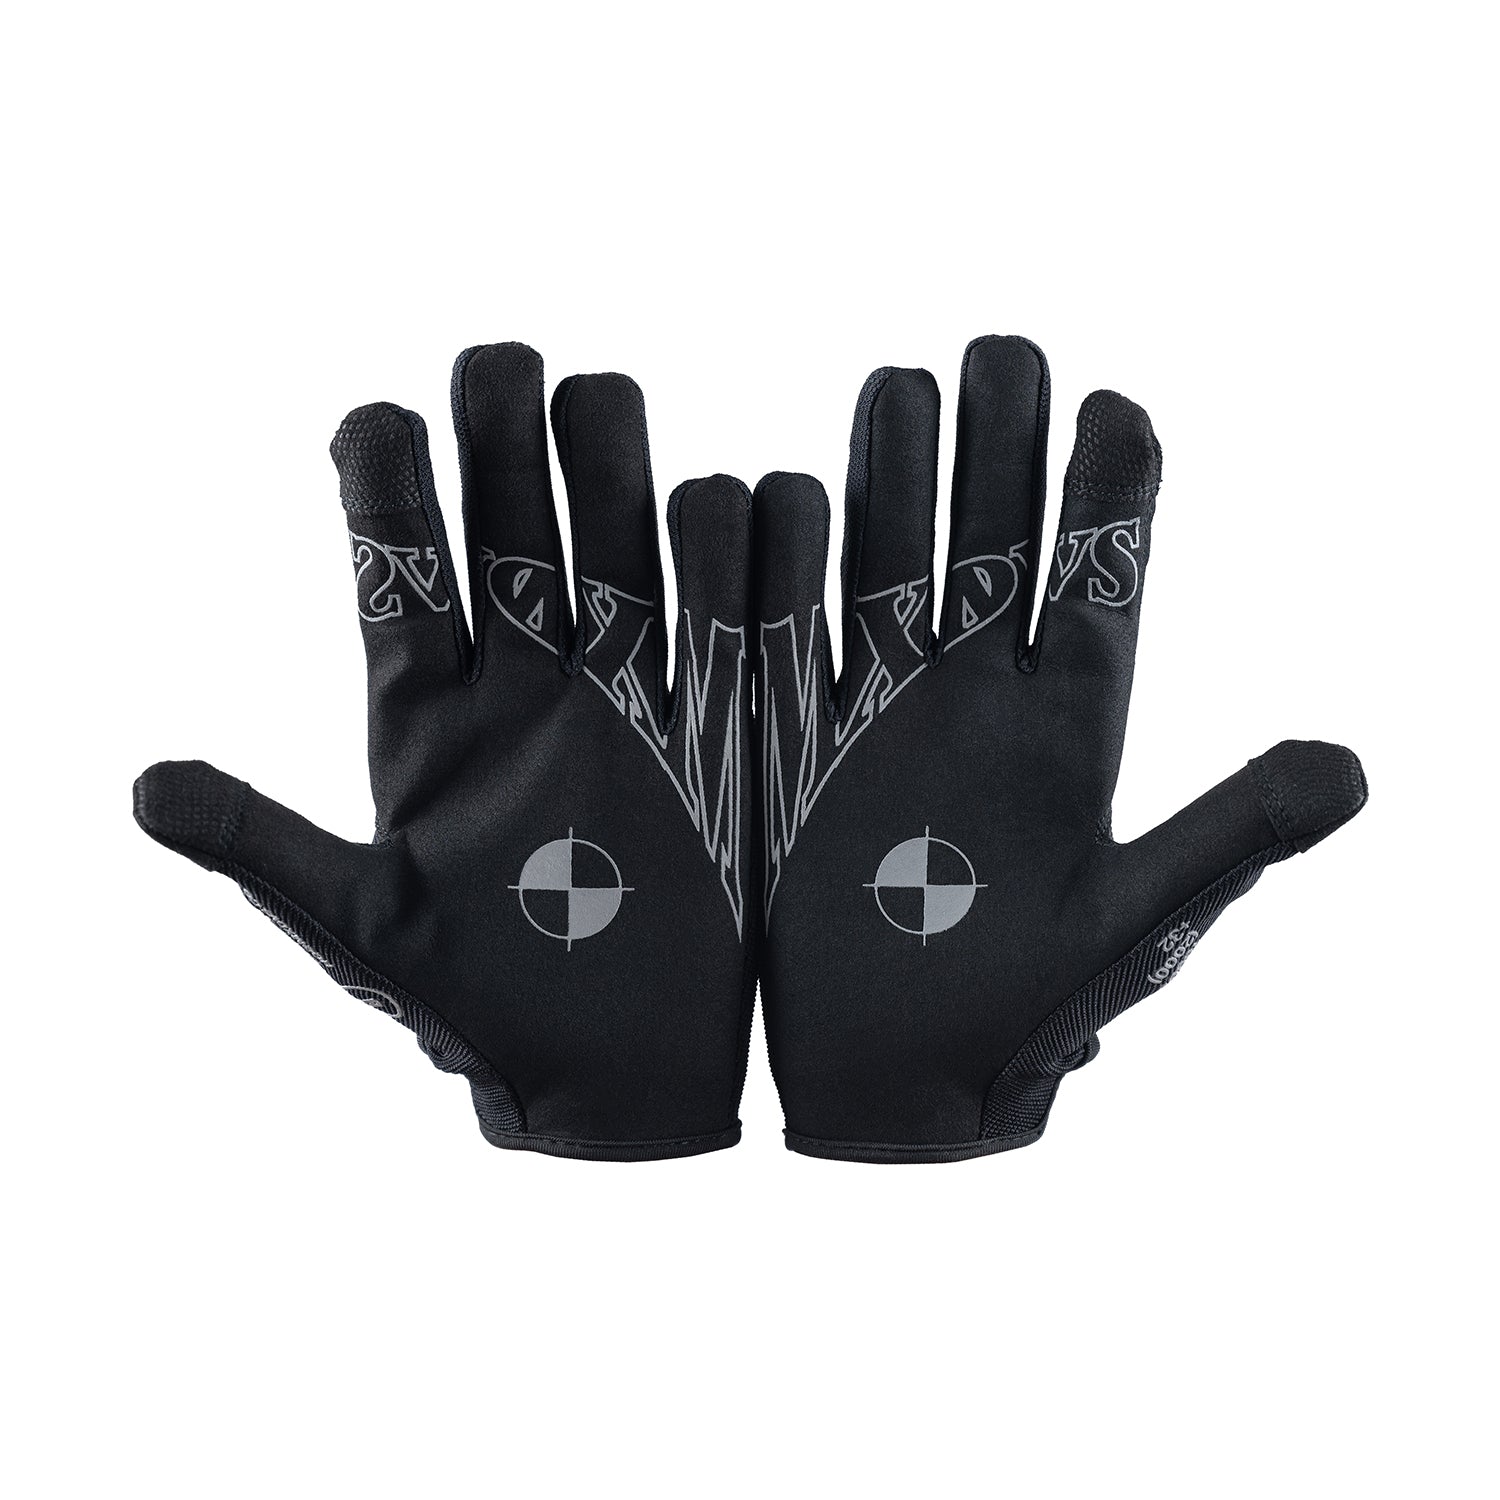 MX Gloves 2.0 – MXDVS